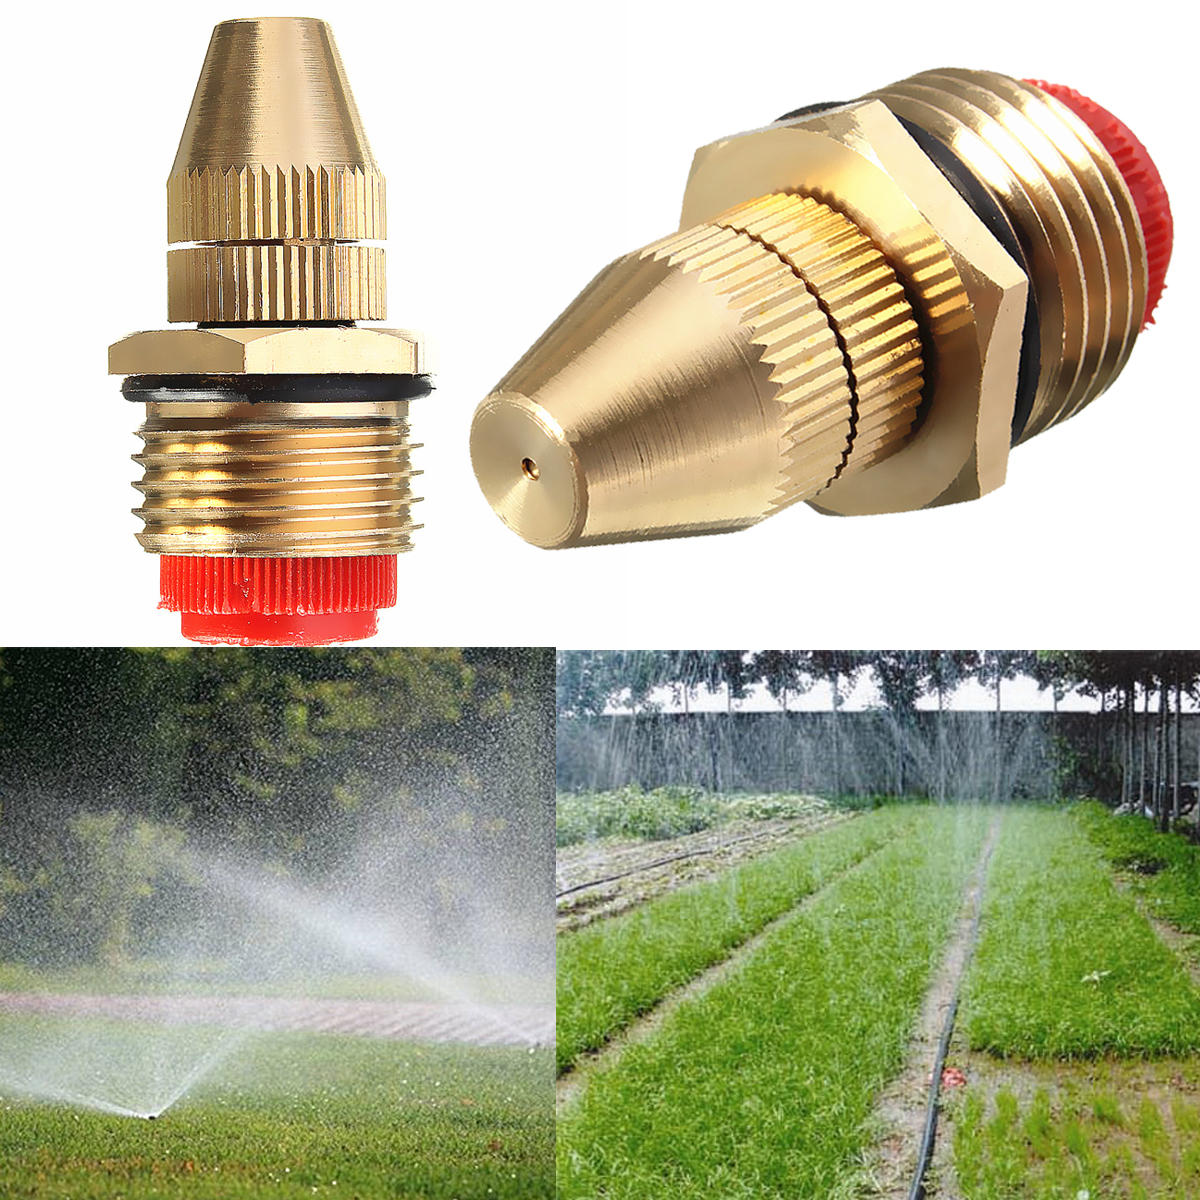 

1/2 Inch Brass Adjustable Sprinkler Garden Lawn Atomizing Water Sprayer Nozzles